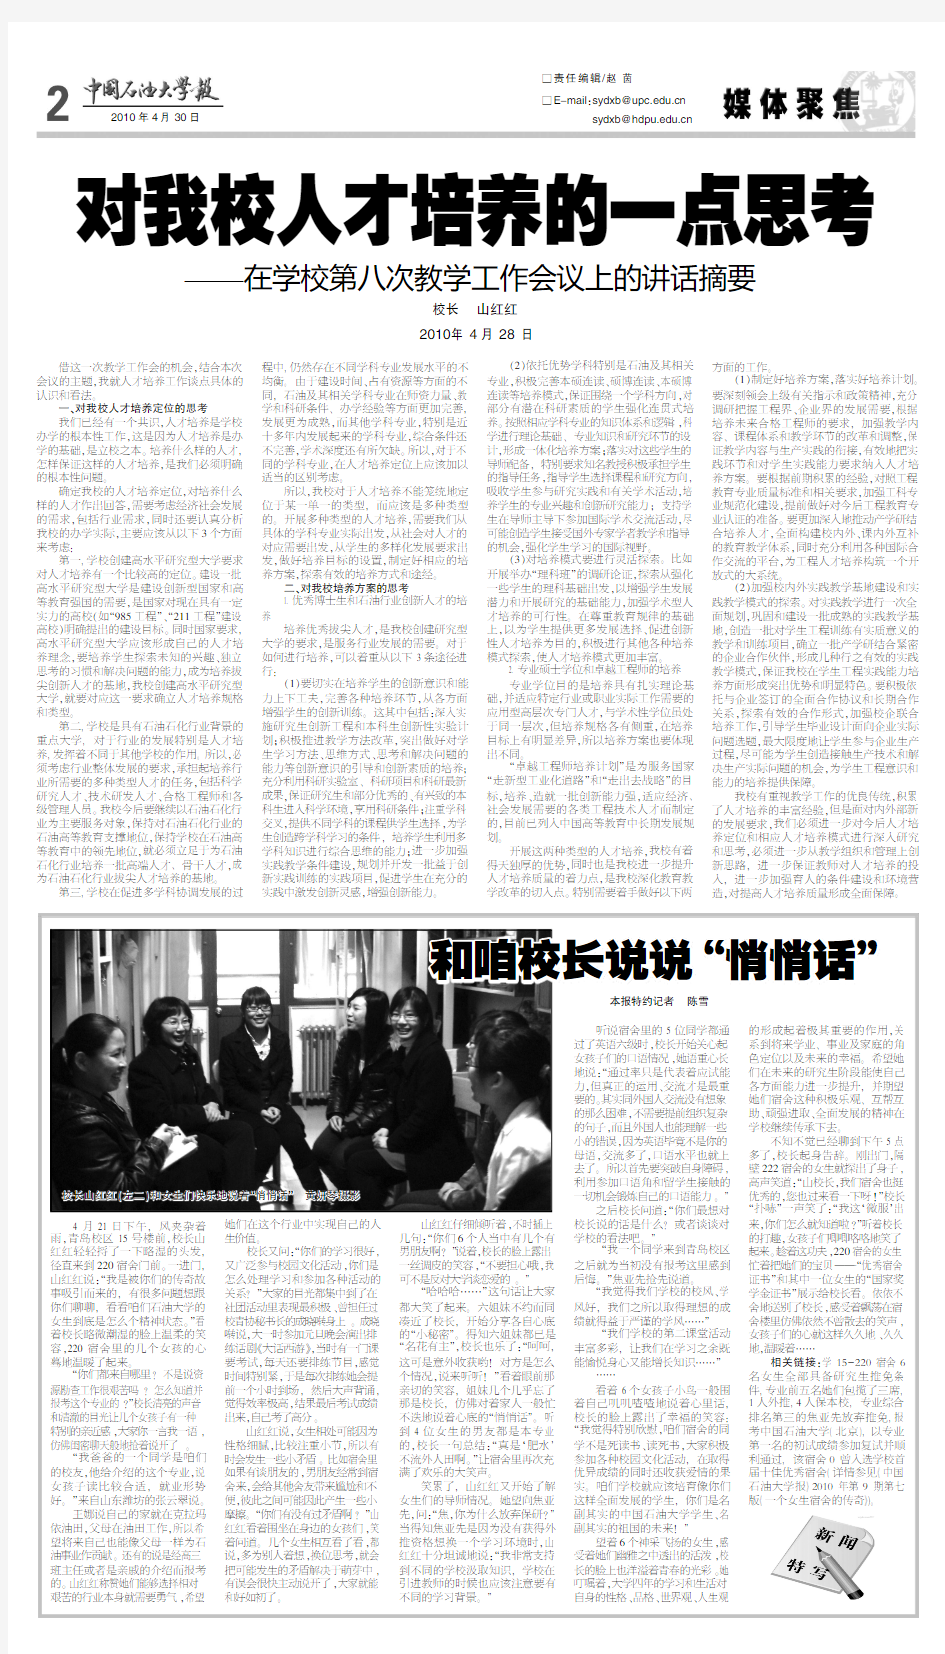 《中国石油大学报》2010年第14期